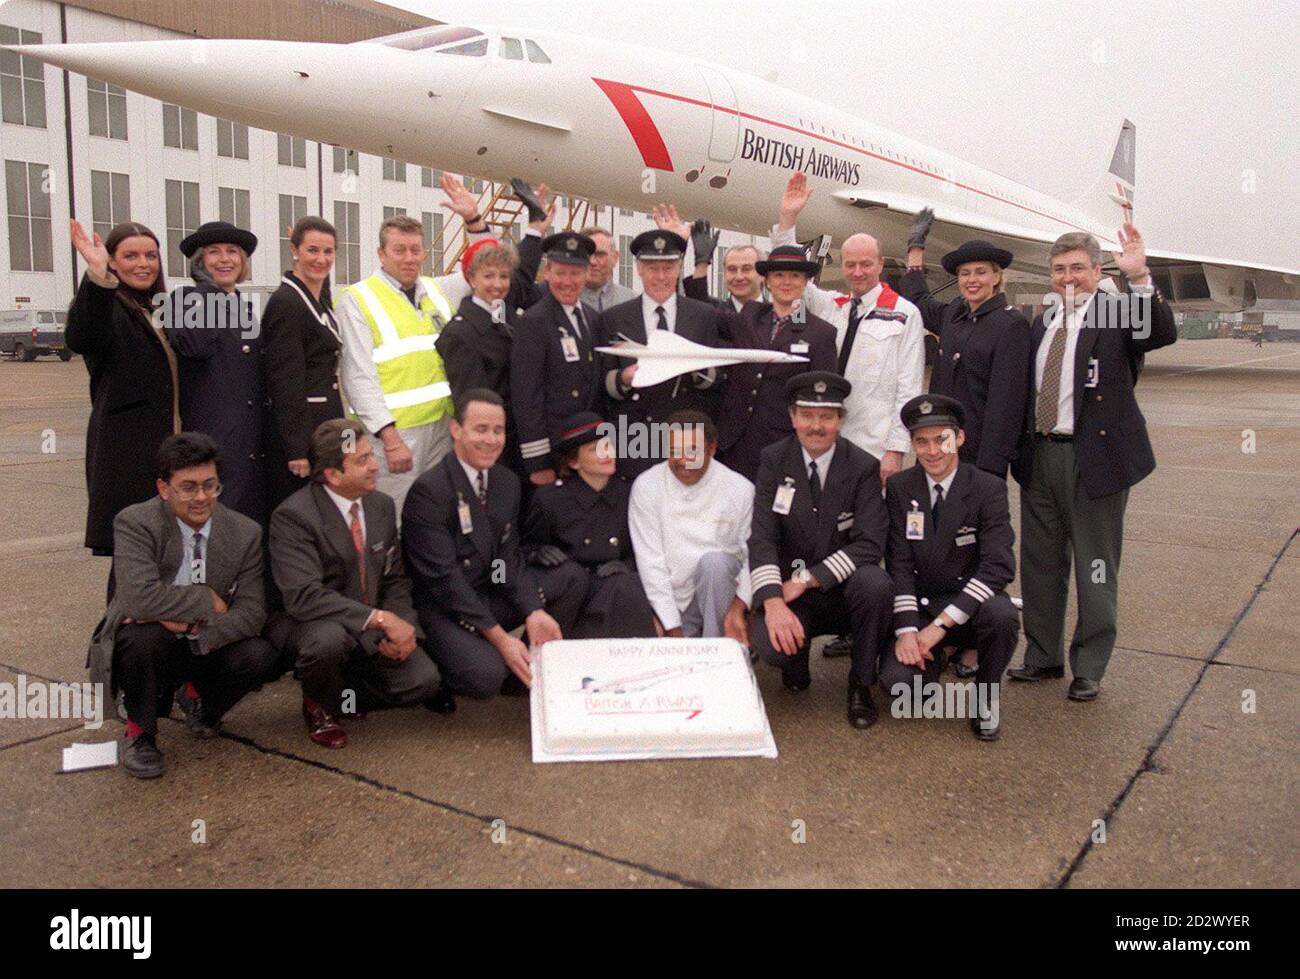 Zwanzig Concorde-Mitarbeiter vom Piloten zum Reiniger feiern heute (Freitag) den zwanzigsten Jahrestag des ersten kommerziellen Fluges der berühmten Flugzeuge in London Heathrow. Seit diesem ersten Flug nach Bahrain hat Concorde das Äquivalent von mehr als 200 Rückflügen zum Mond geflogen. Stockfoto